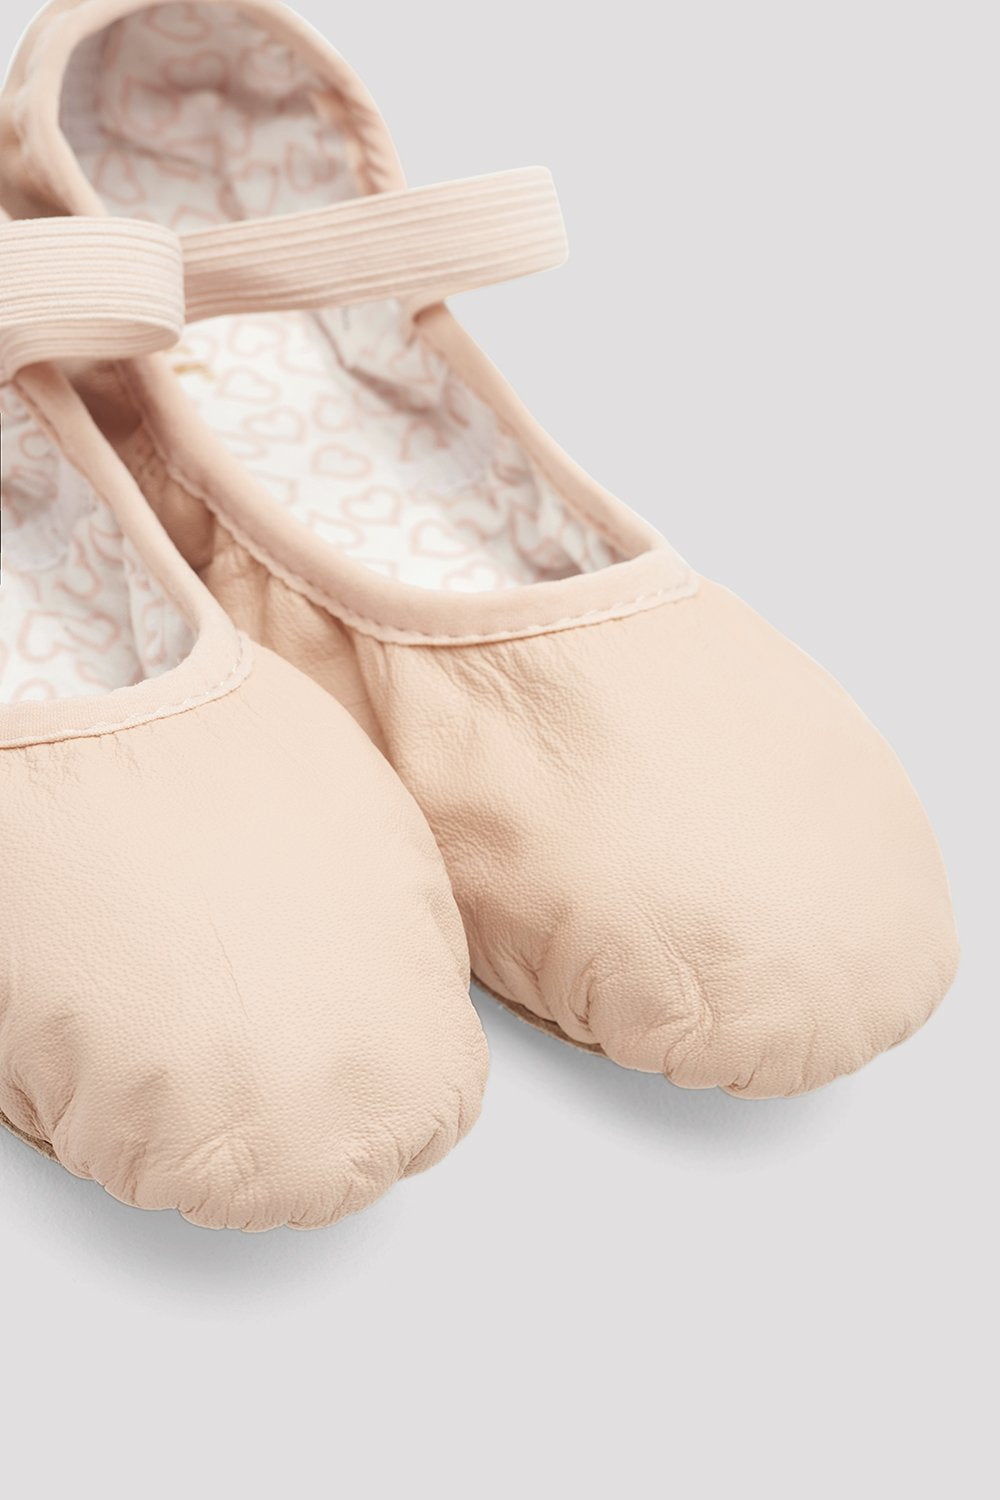 Ladies Belle Leather Ballet Shoes S0227L B